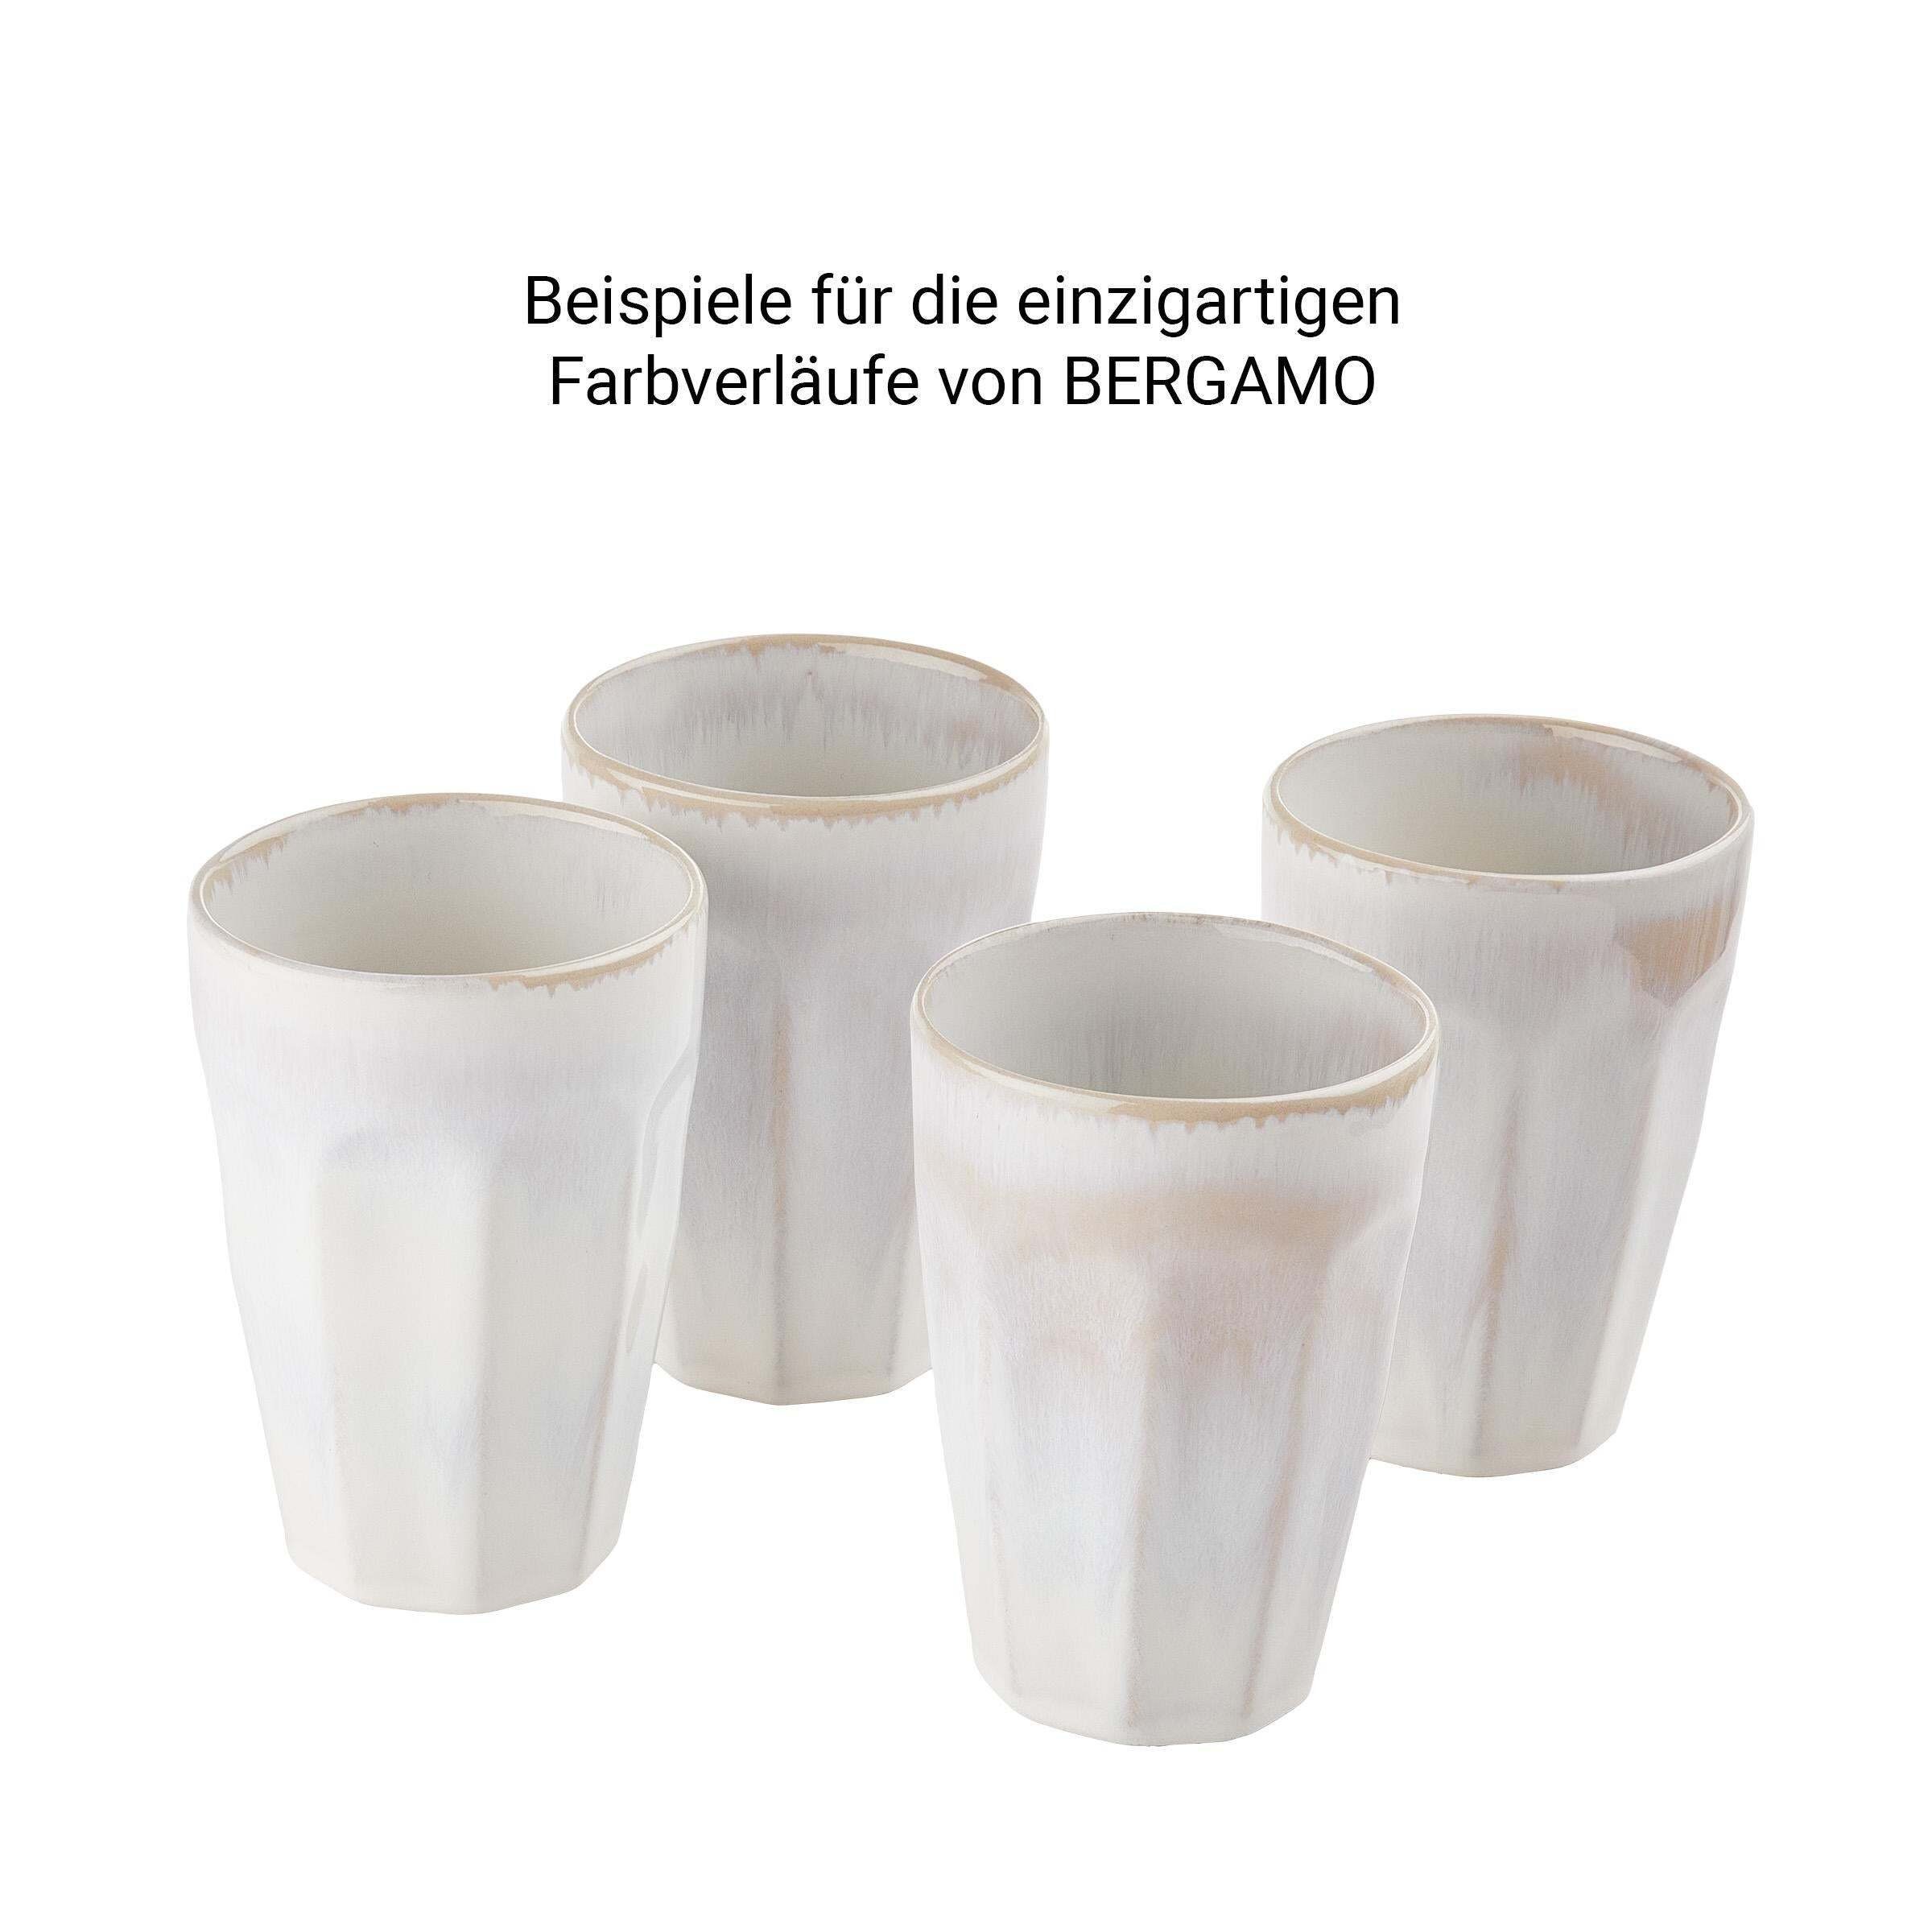 BERGAMO Steinzeug Latte BUTLERS Macchiato Tasse 330ml, Tasse